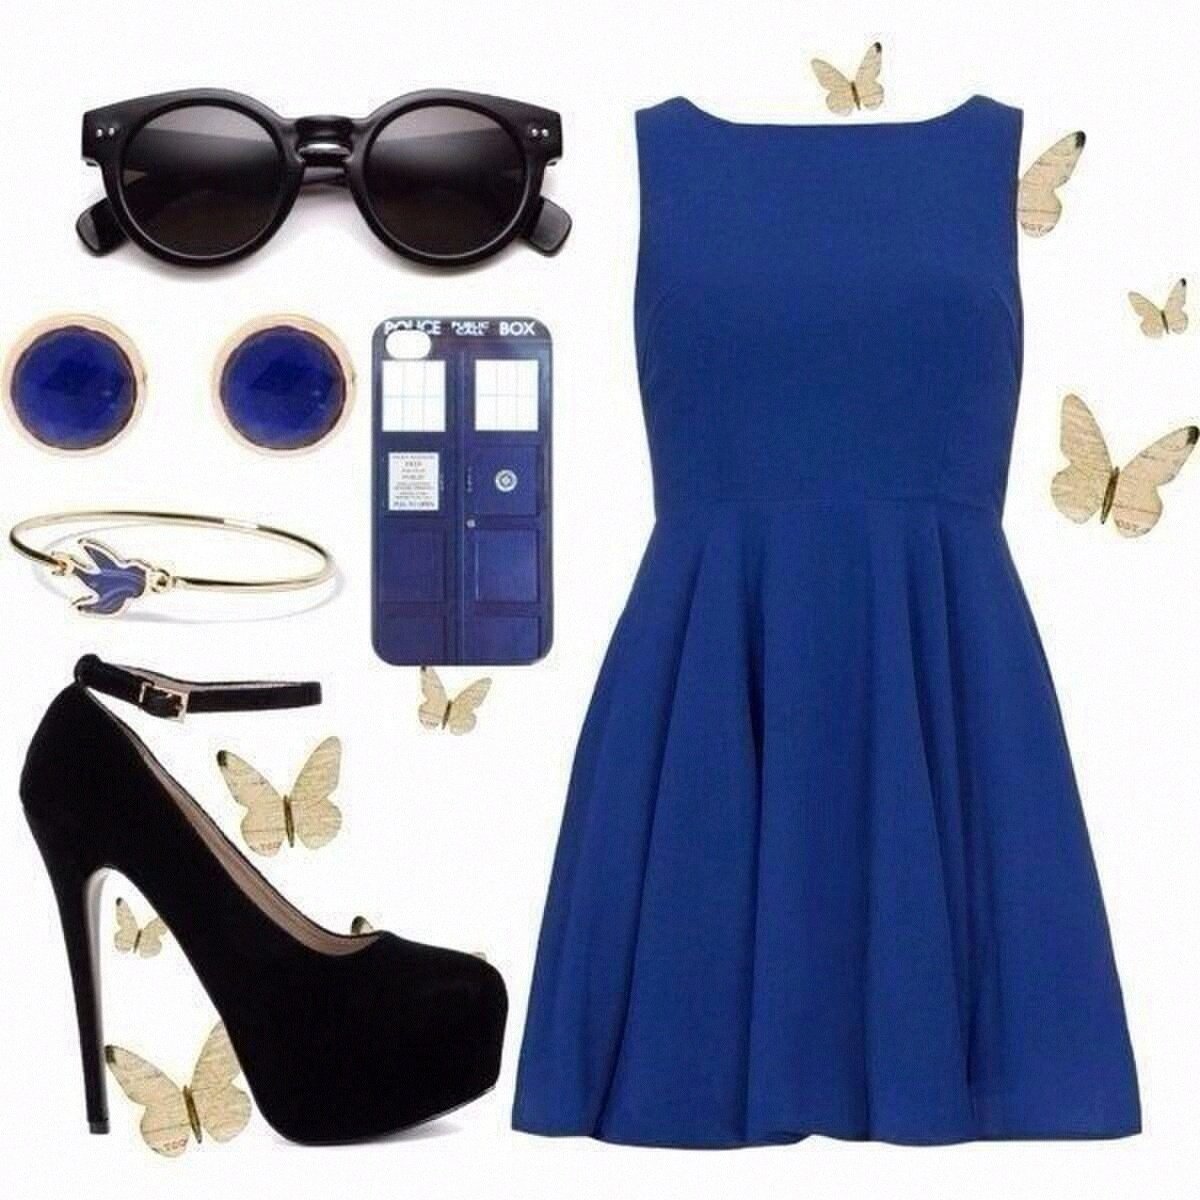 Образ с синим платьем